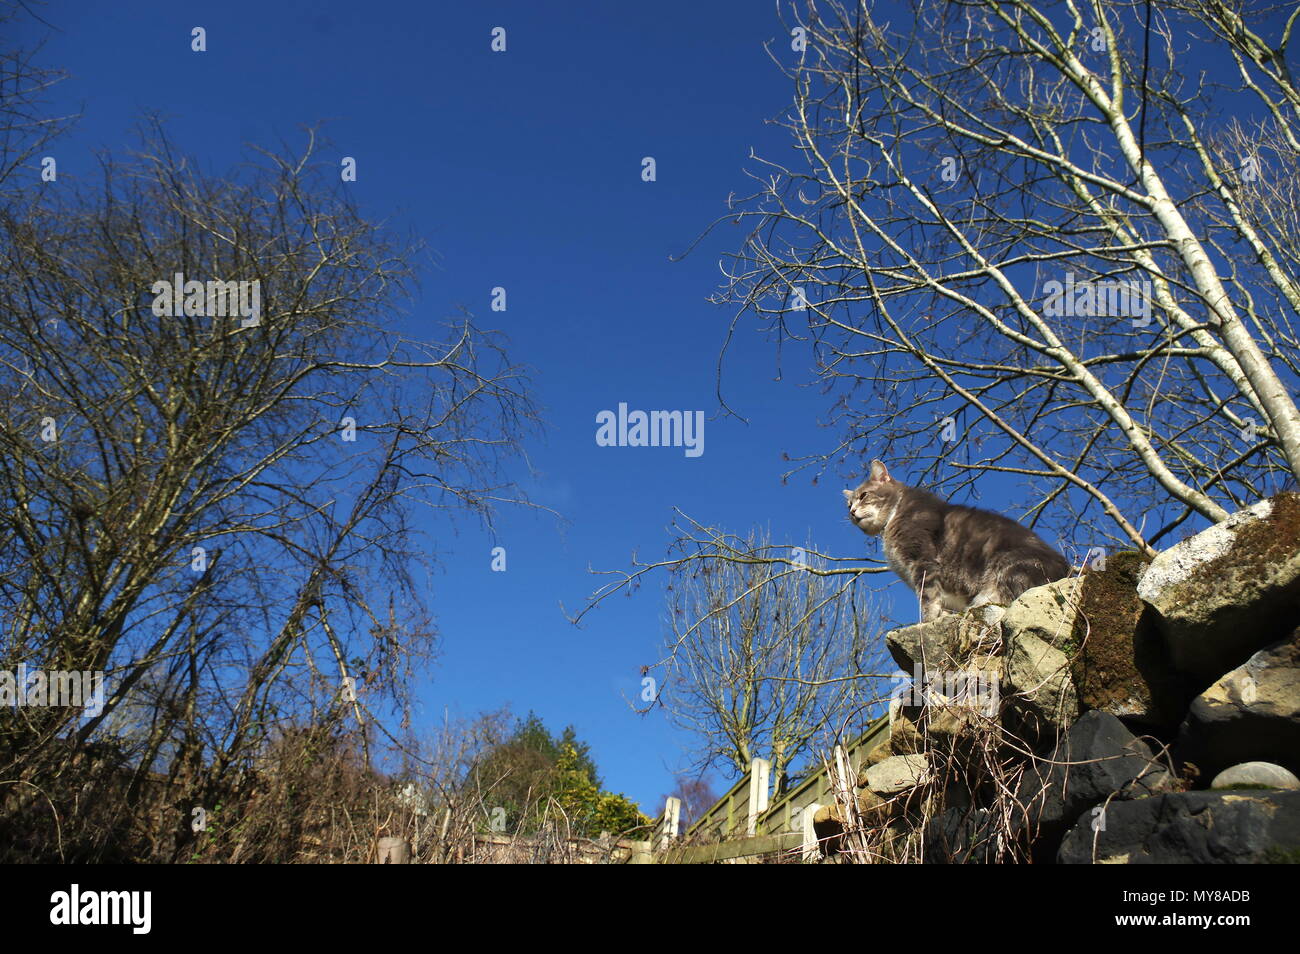 Tabby gatto sul muro del giardino Foto Stock